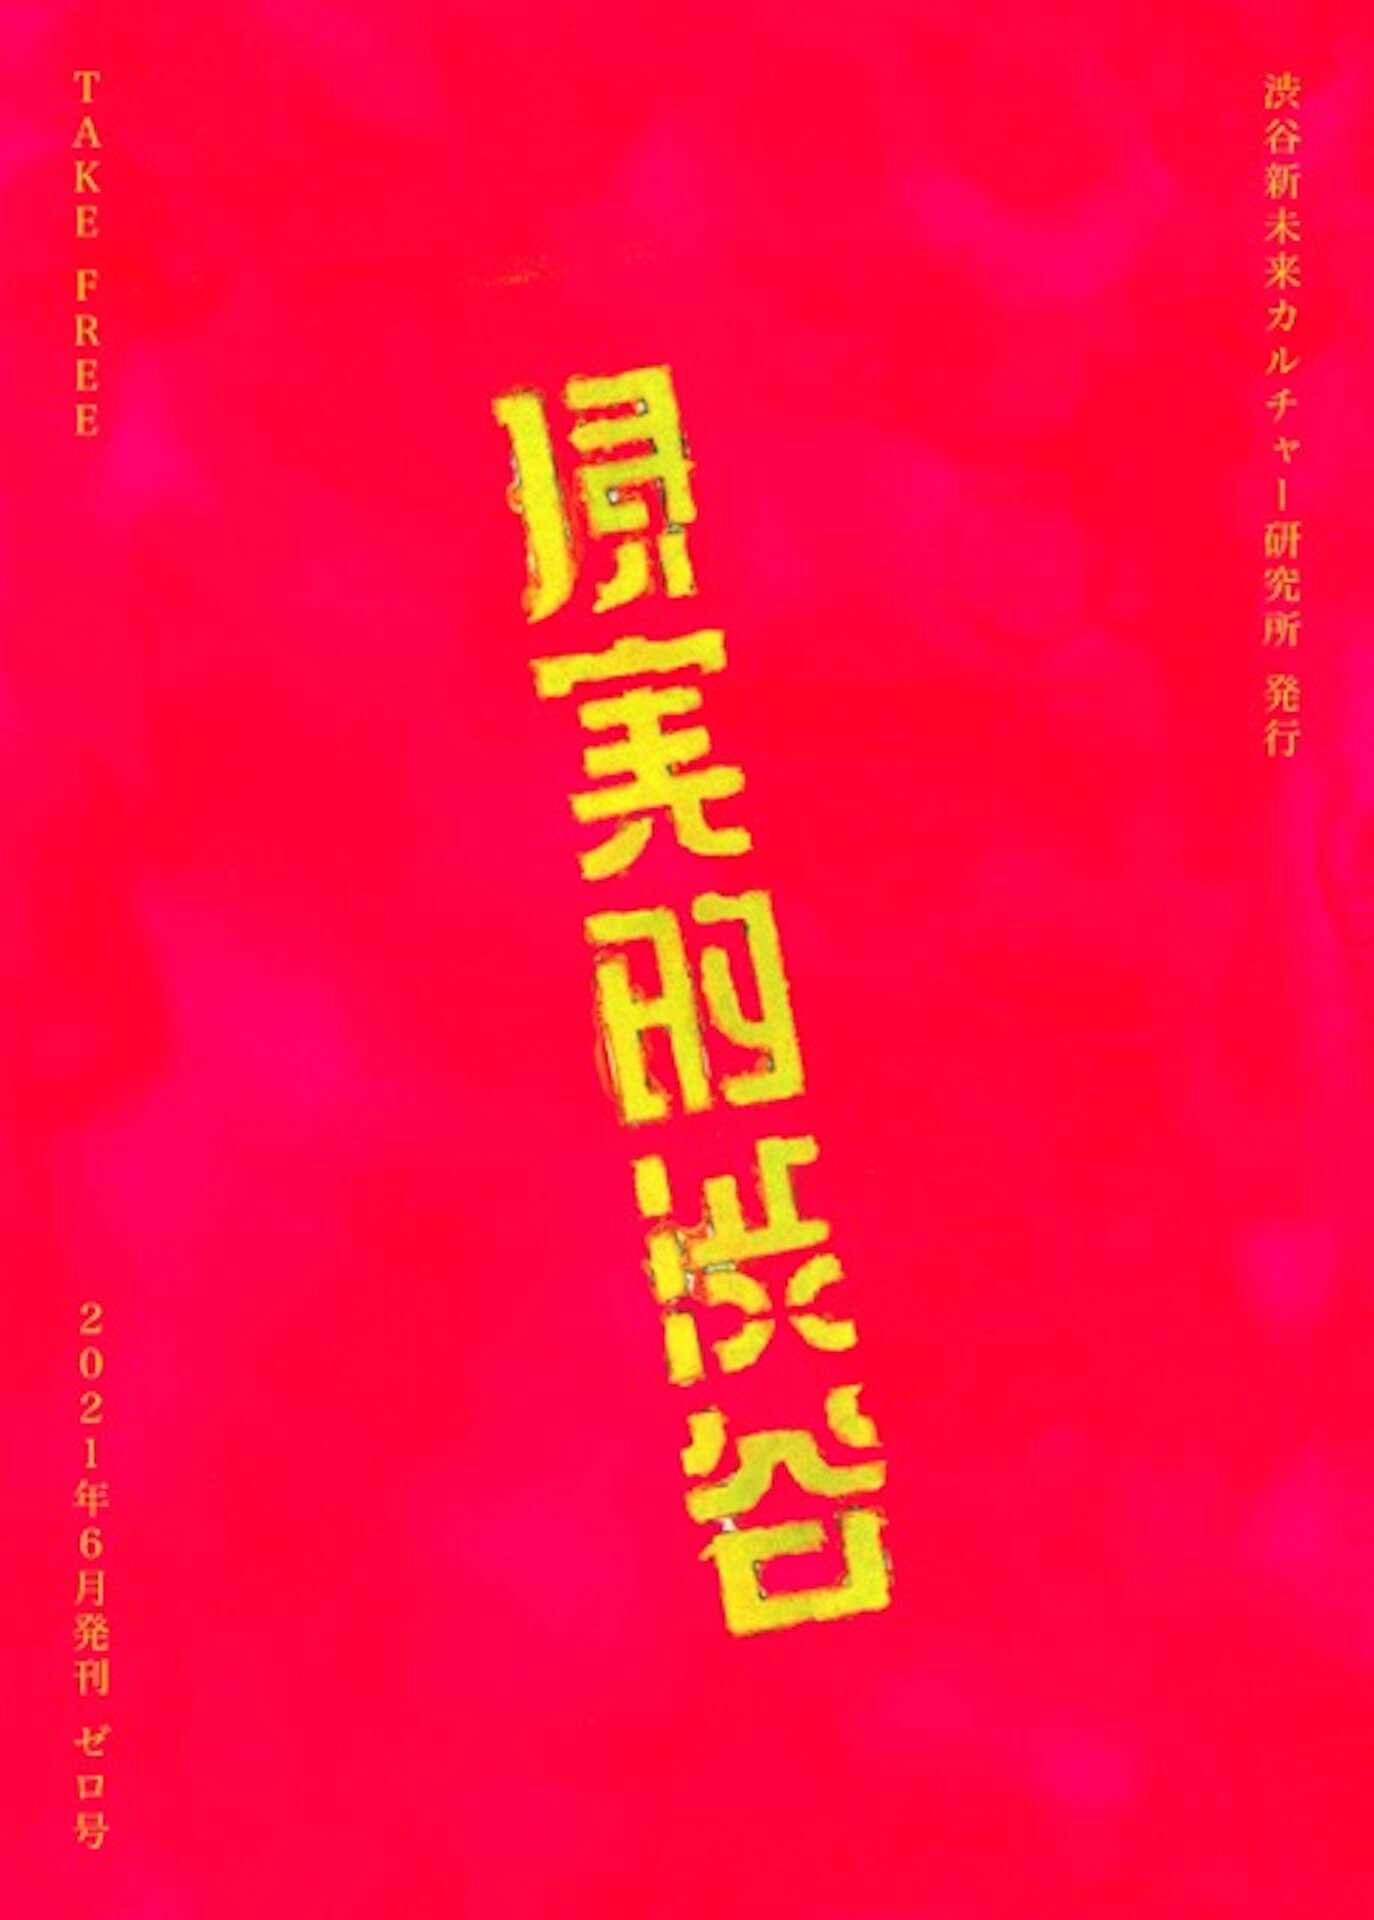 編集長にヒラタビンを迎えたZINE『現実的渋谷』が新創刊！6月18日より配布開始 fashon-shibuyazin-2106163